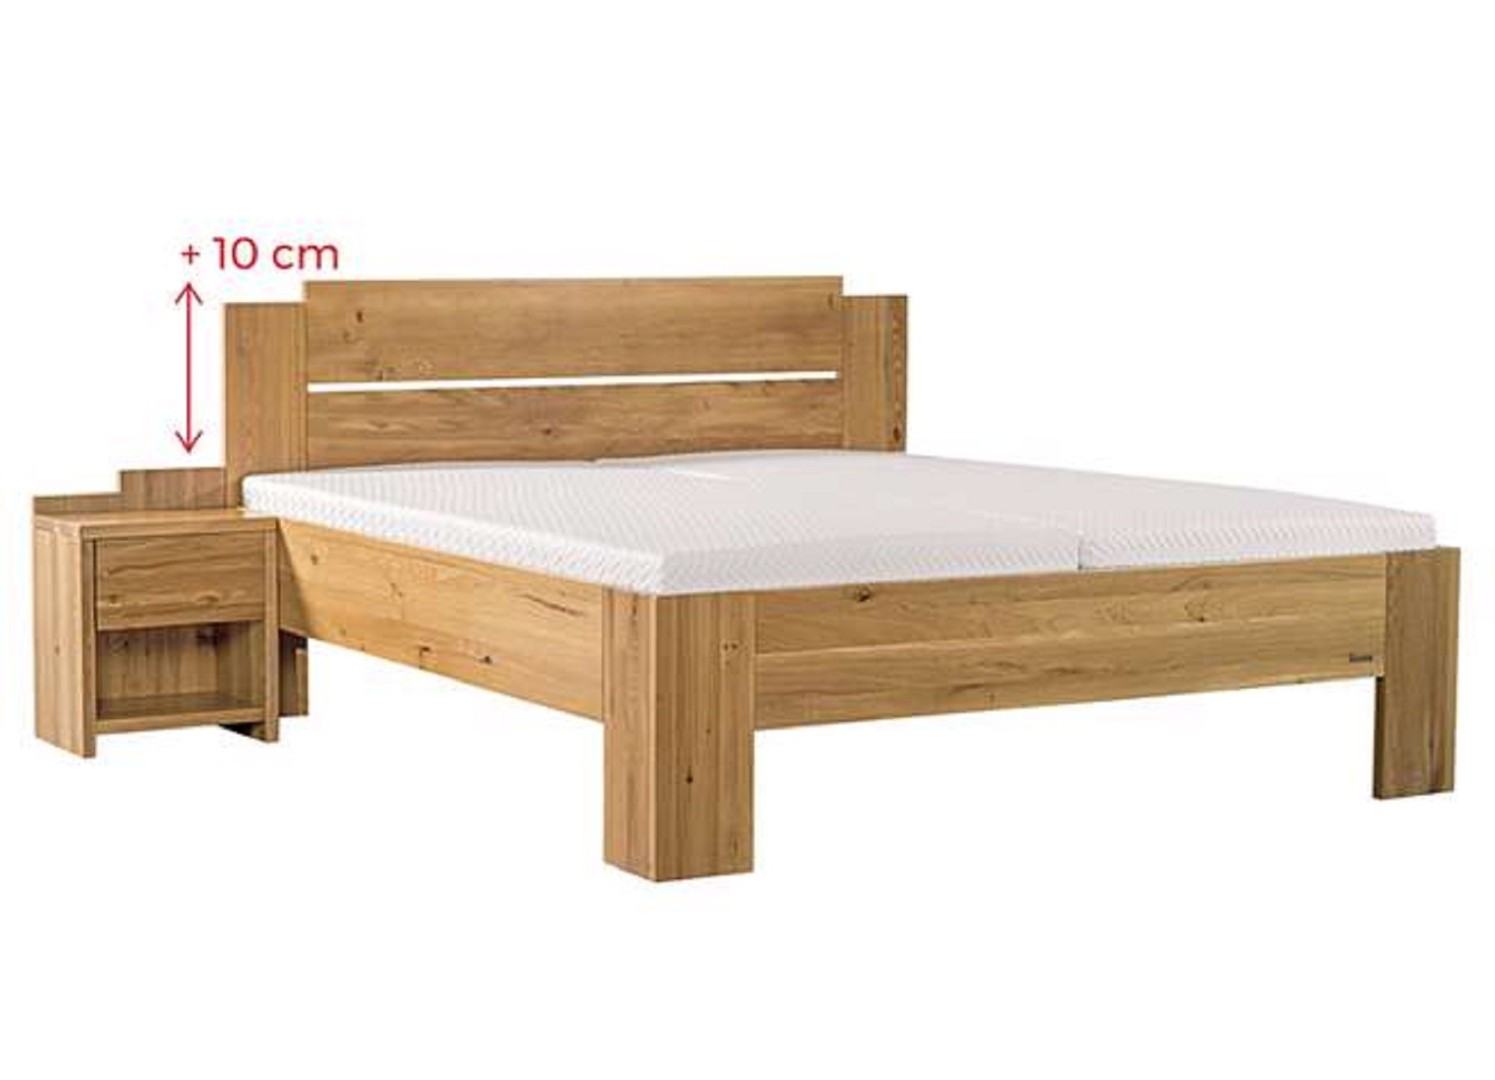 Ahorn GRADO MAX - masivní dubová postel se zvýšeným čelem 120 x 200 cm, dub masiv